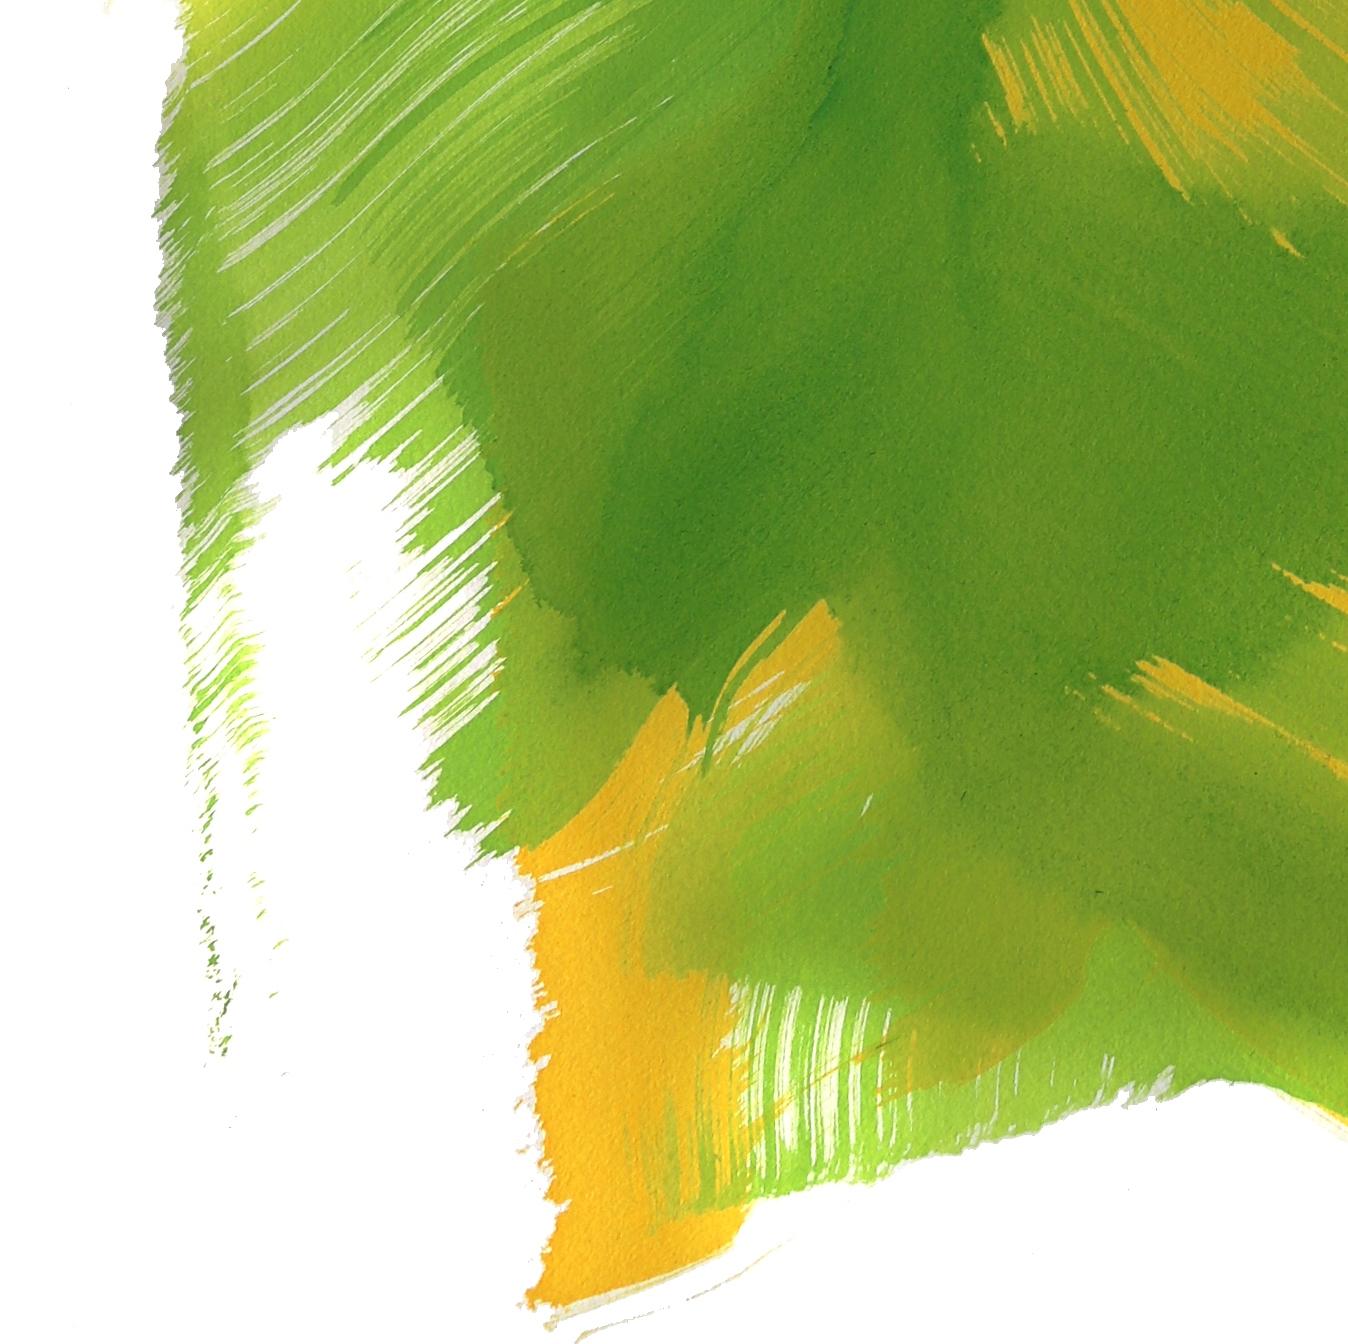 The Green Dress 2 - Abstract Mixed Media Art by Bettina Mauel